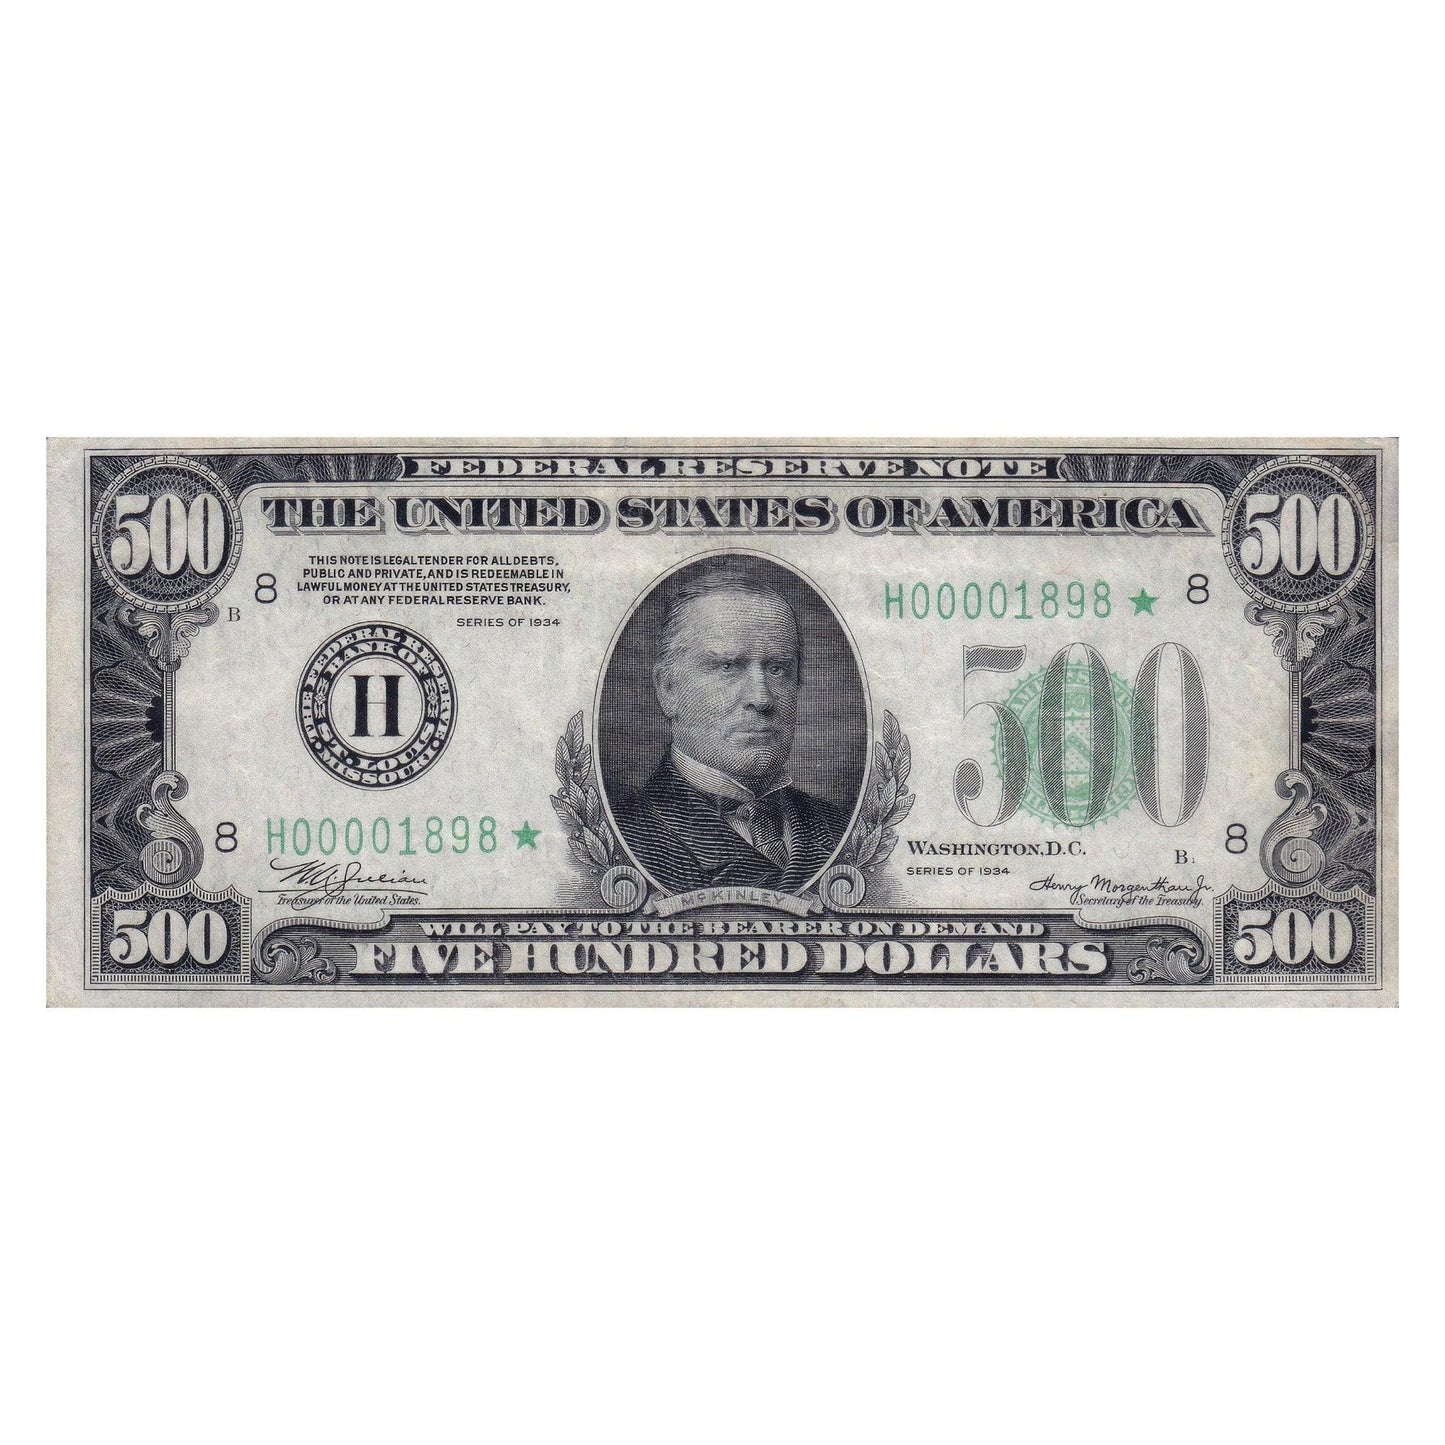 $500 Dollar Bill Graphic Wall Decal Sticker. Money Cash. #GWray106